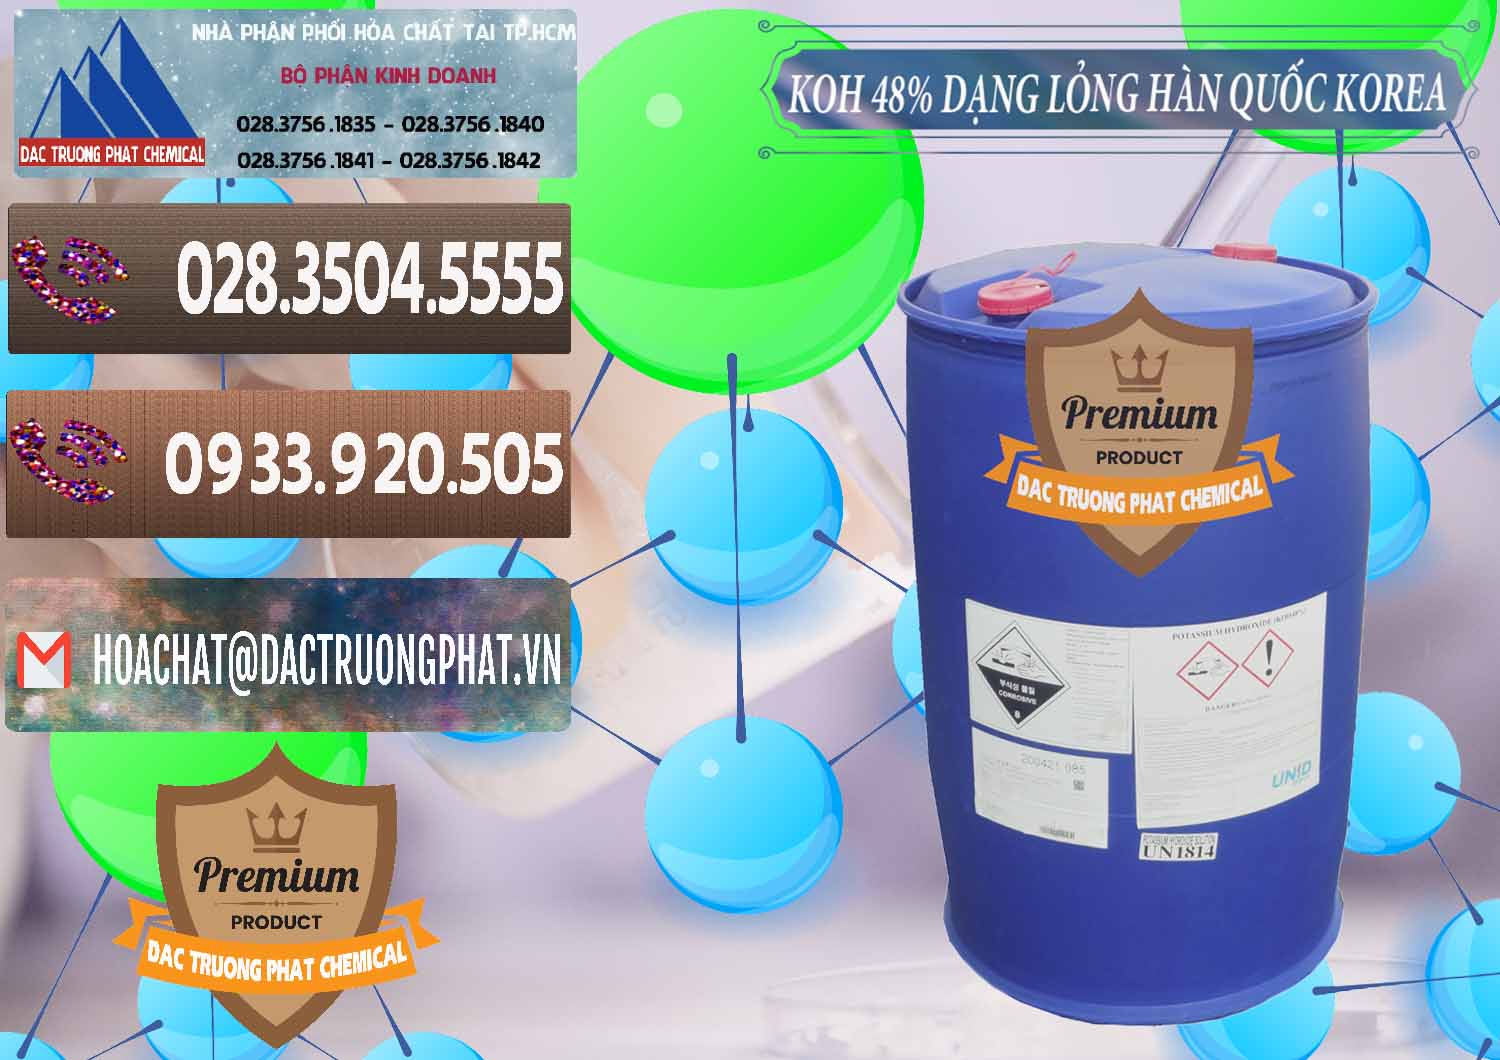 Nơi chuyên kinh doanh & bán KOH Dạng Nước – Potassium Hydroxide Lỏng 48% Hàn Quốc Korea - 0293 - Nơi cung cấp ( phân phối ) hóa chất tại TP.HCM - hoachatviet.net